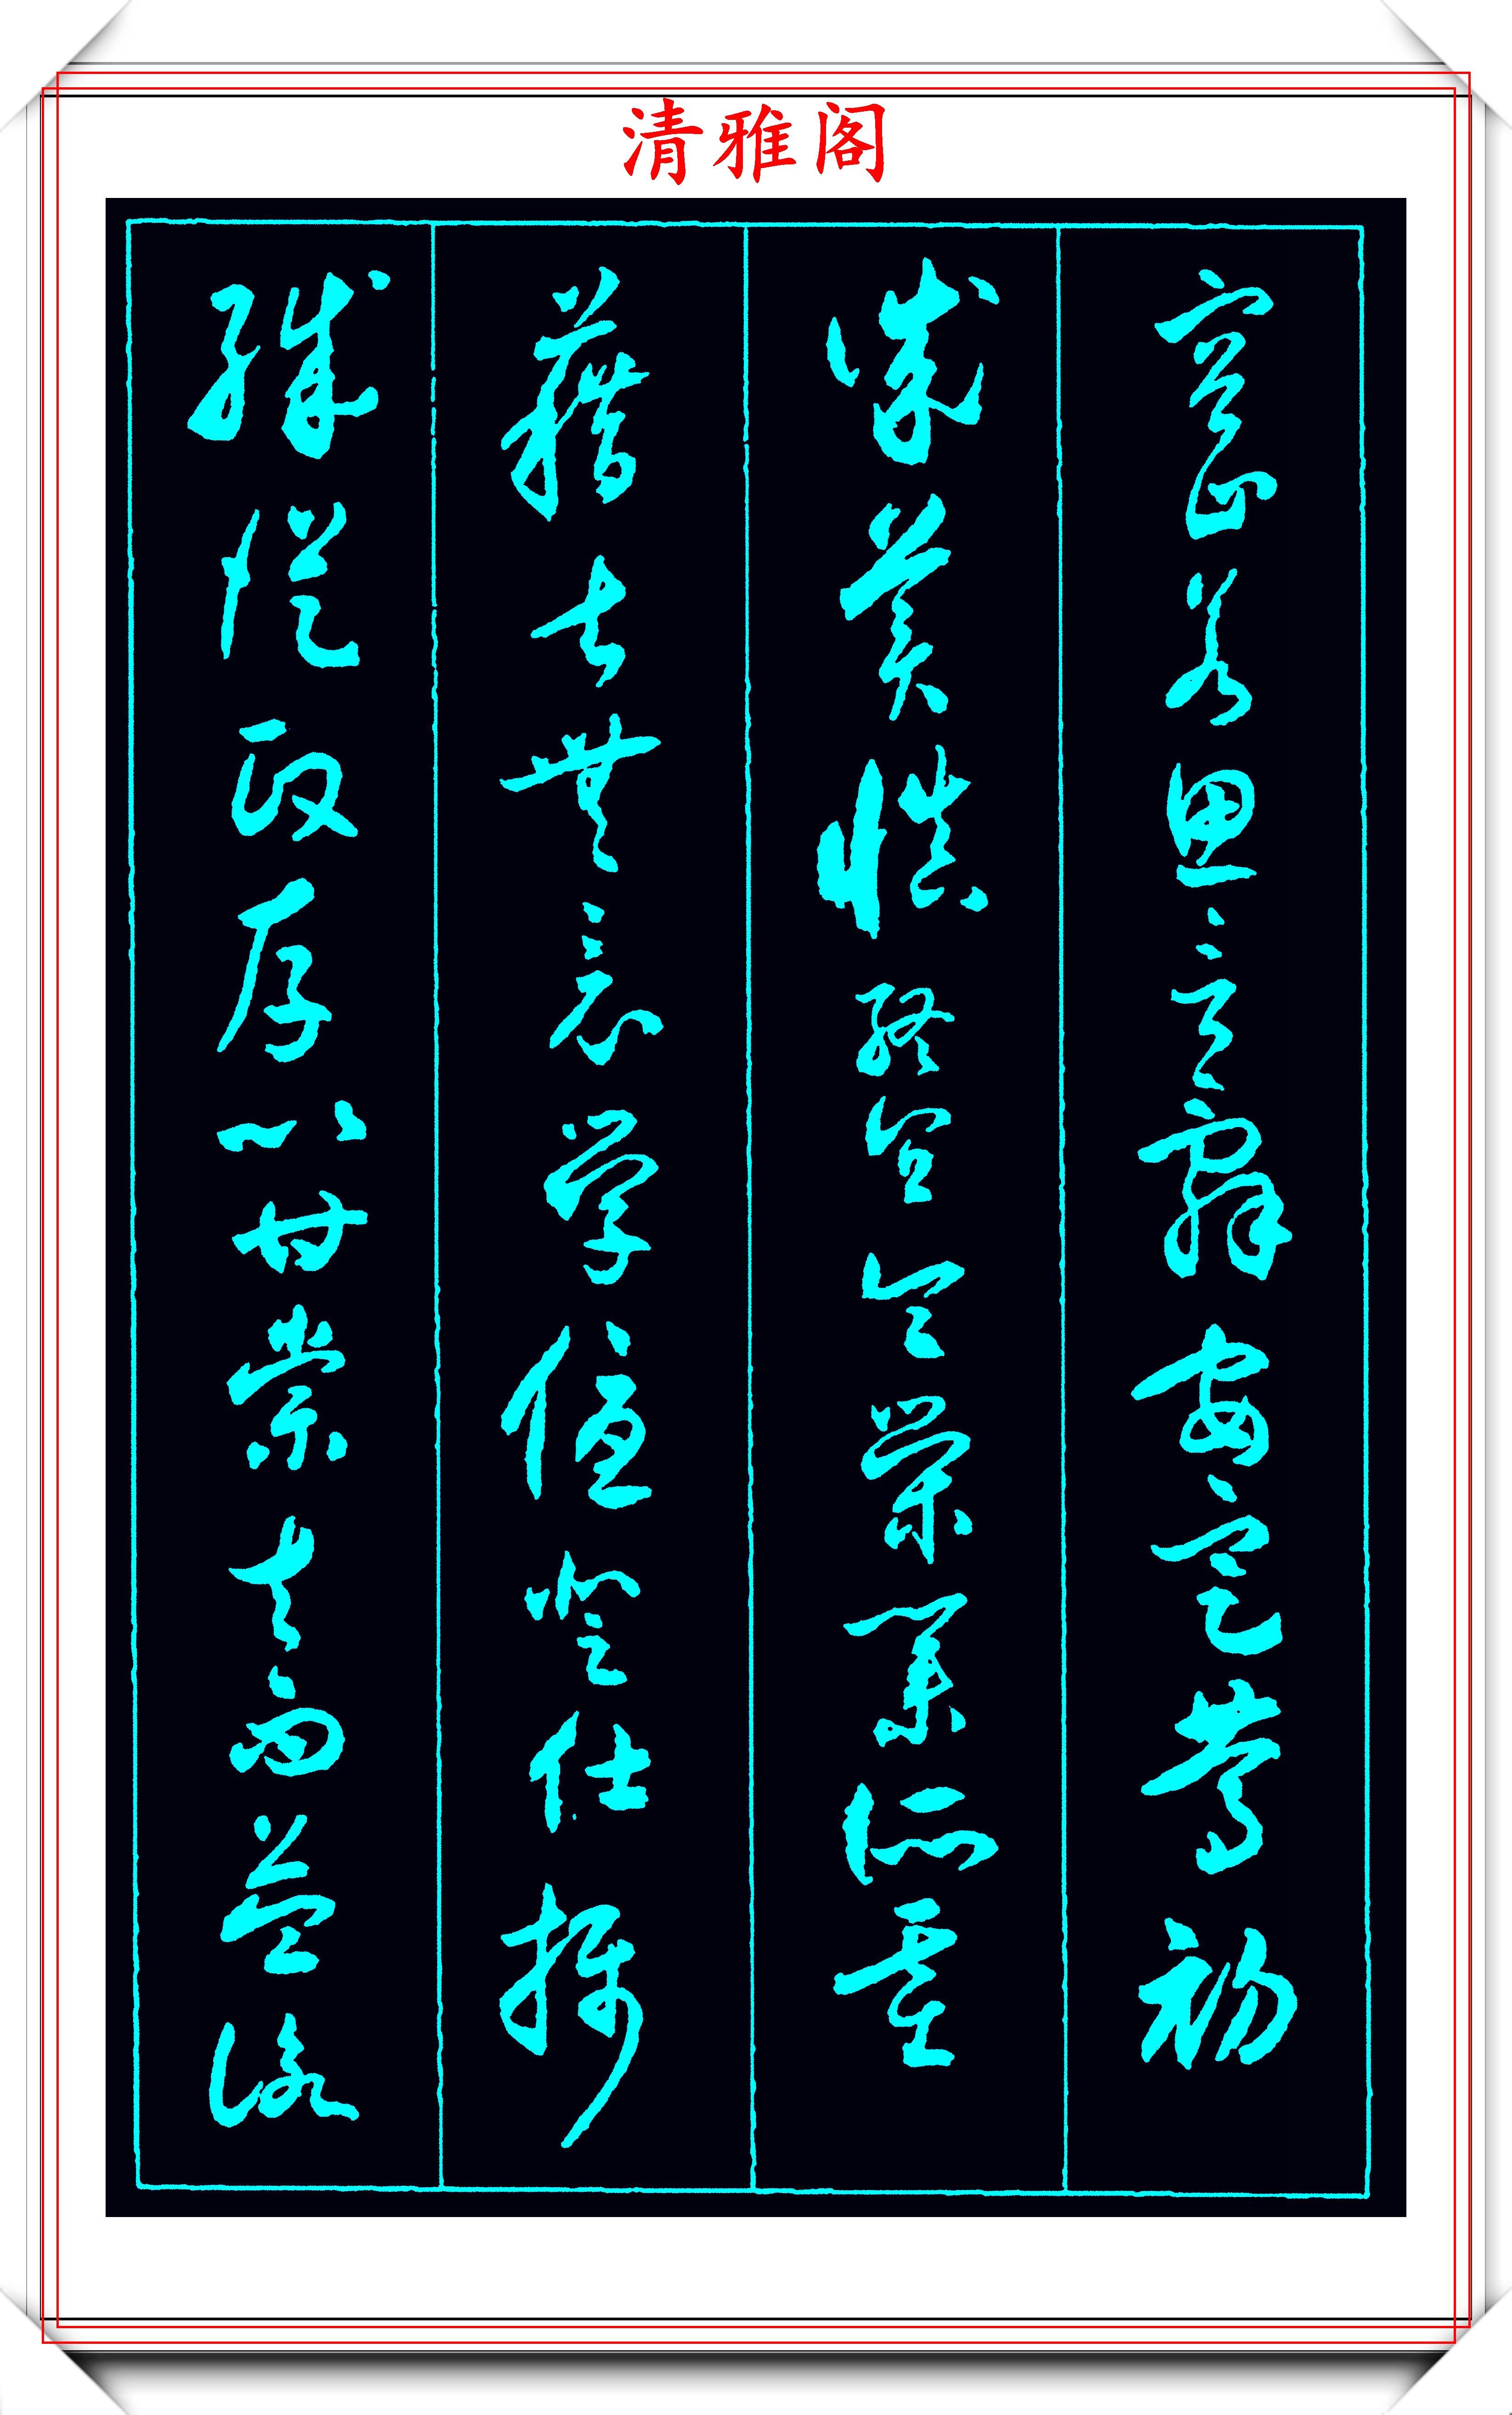 原创沈尹默1947年的草书作品一千个常用字字帖欣赏学草书首选